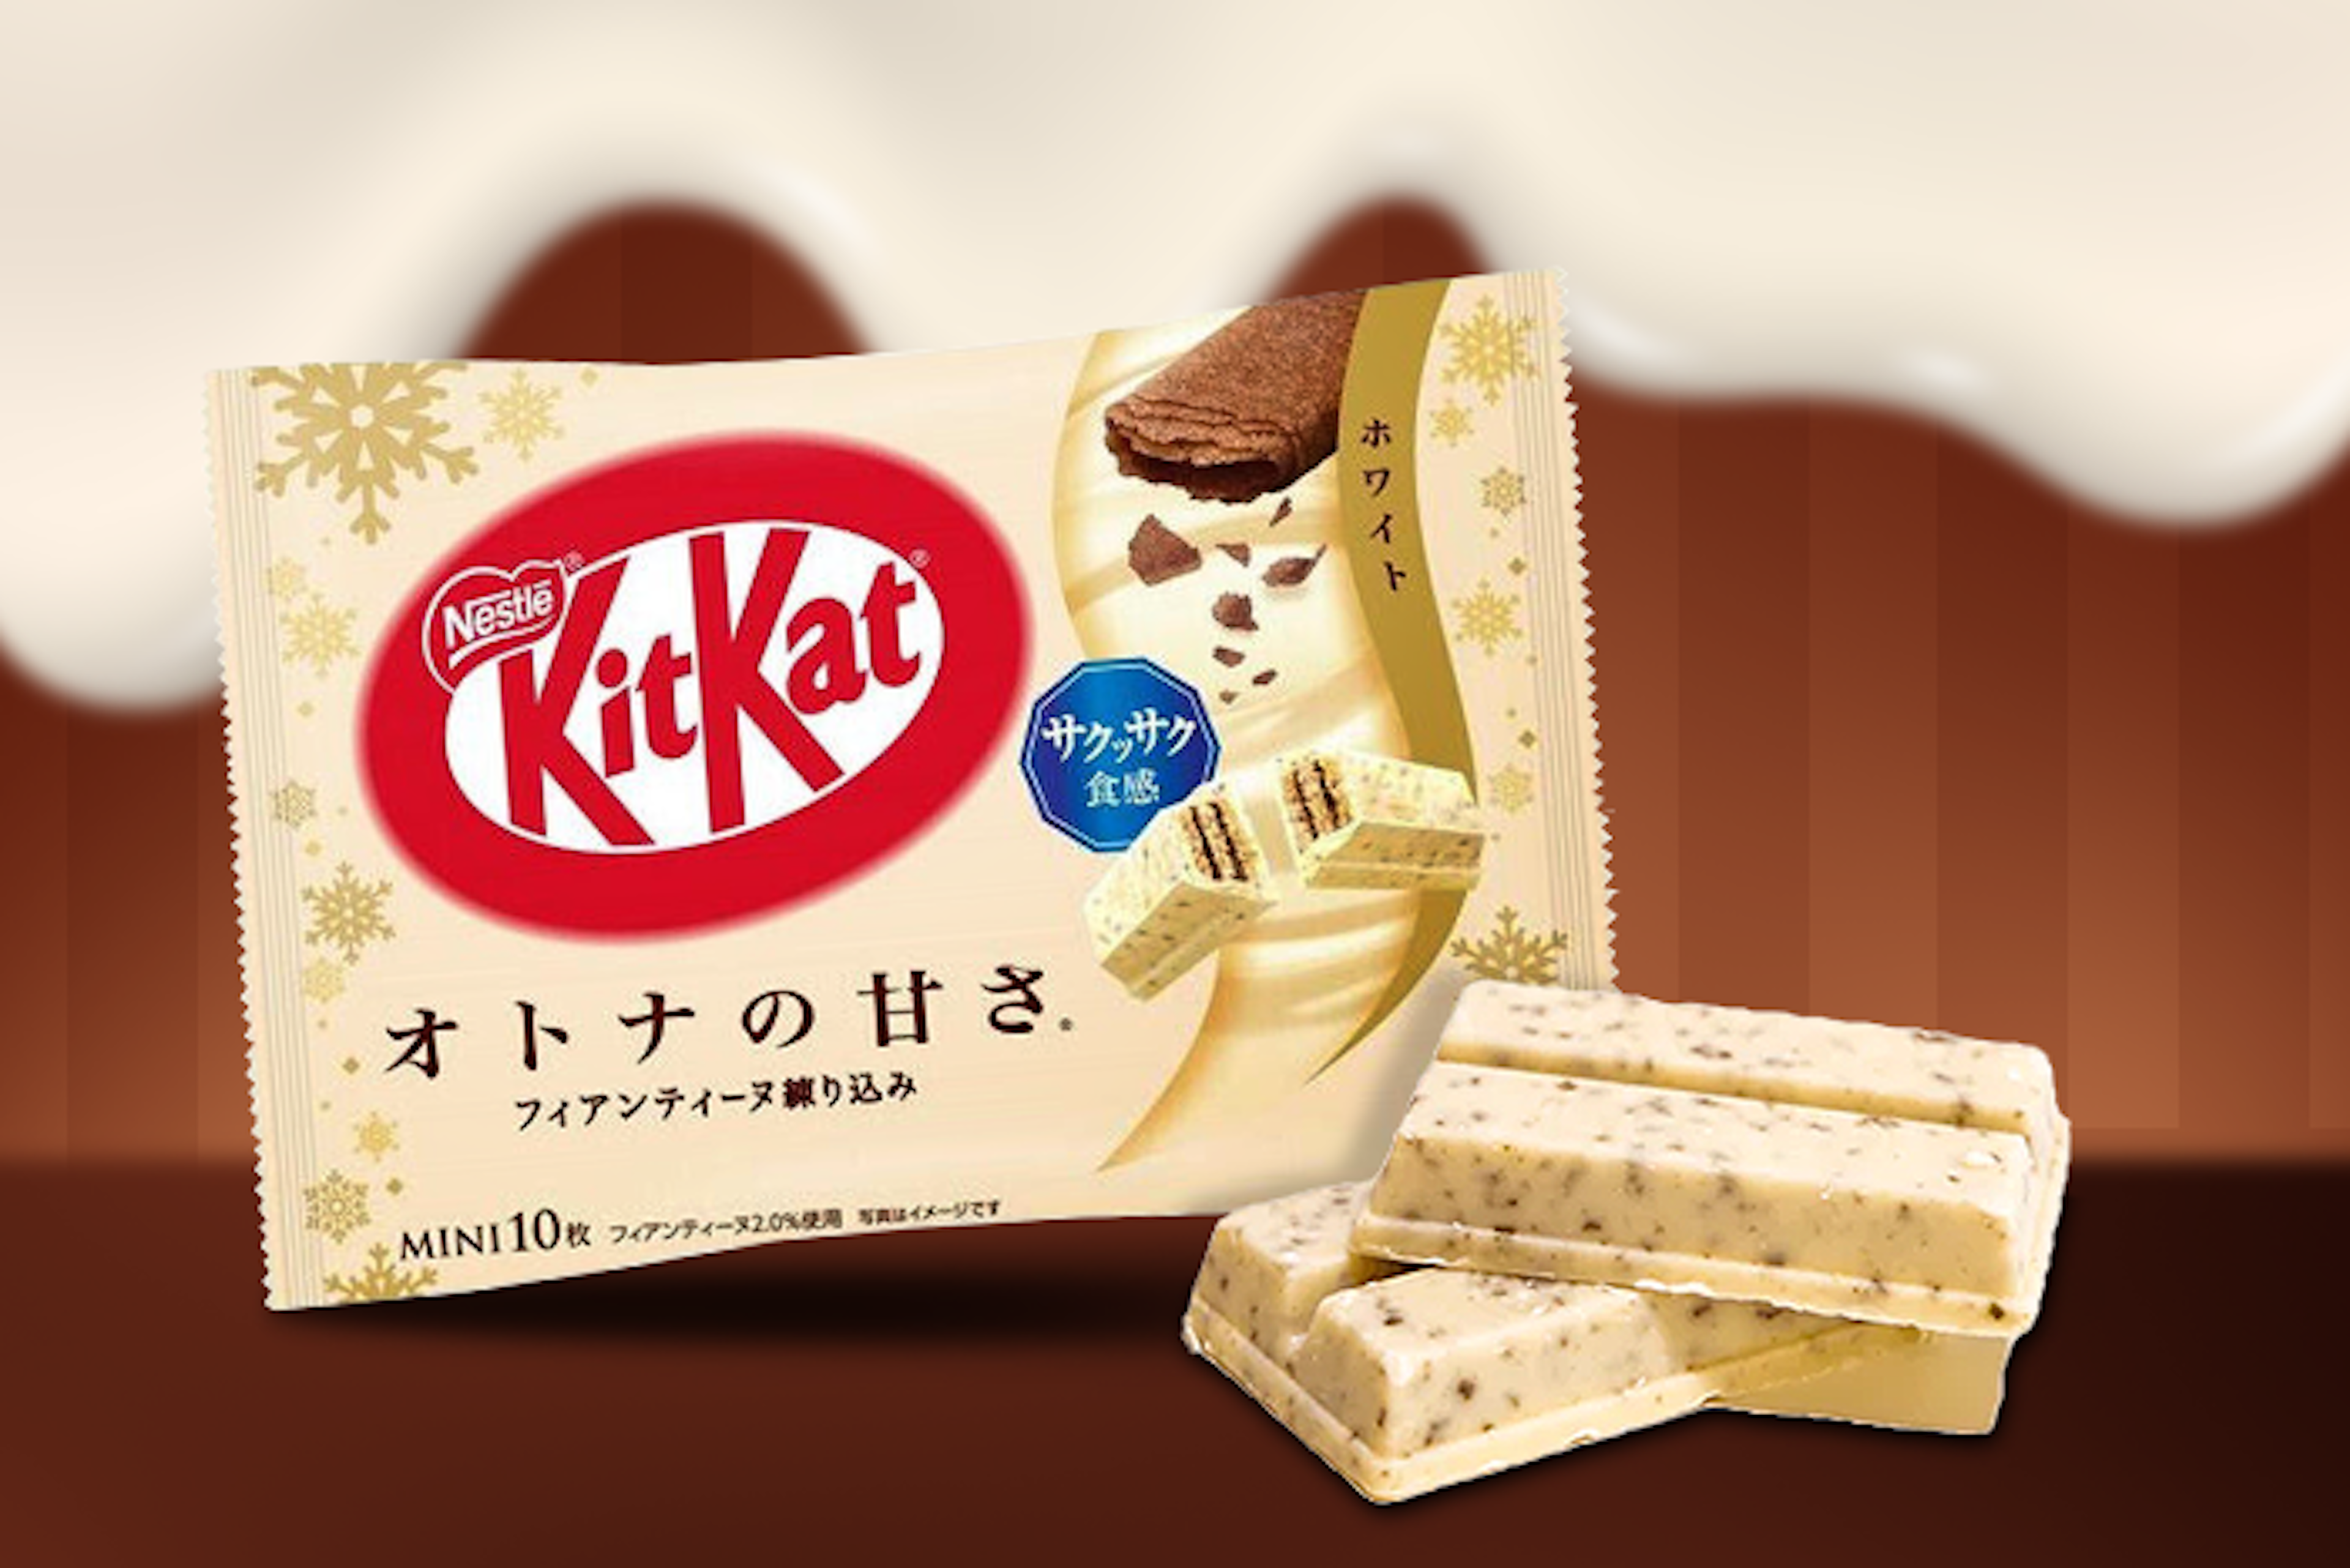 Kitkat-Mini-Weiße-Schokolade-10-Stück-Packung-auf-einem-hellen-Hintergrund-mit-deutlich-sichtbarem-Kitkat-Logo-und-Produktinformationen